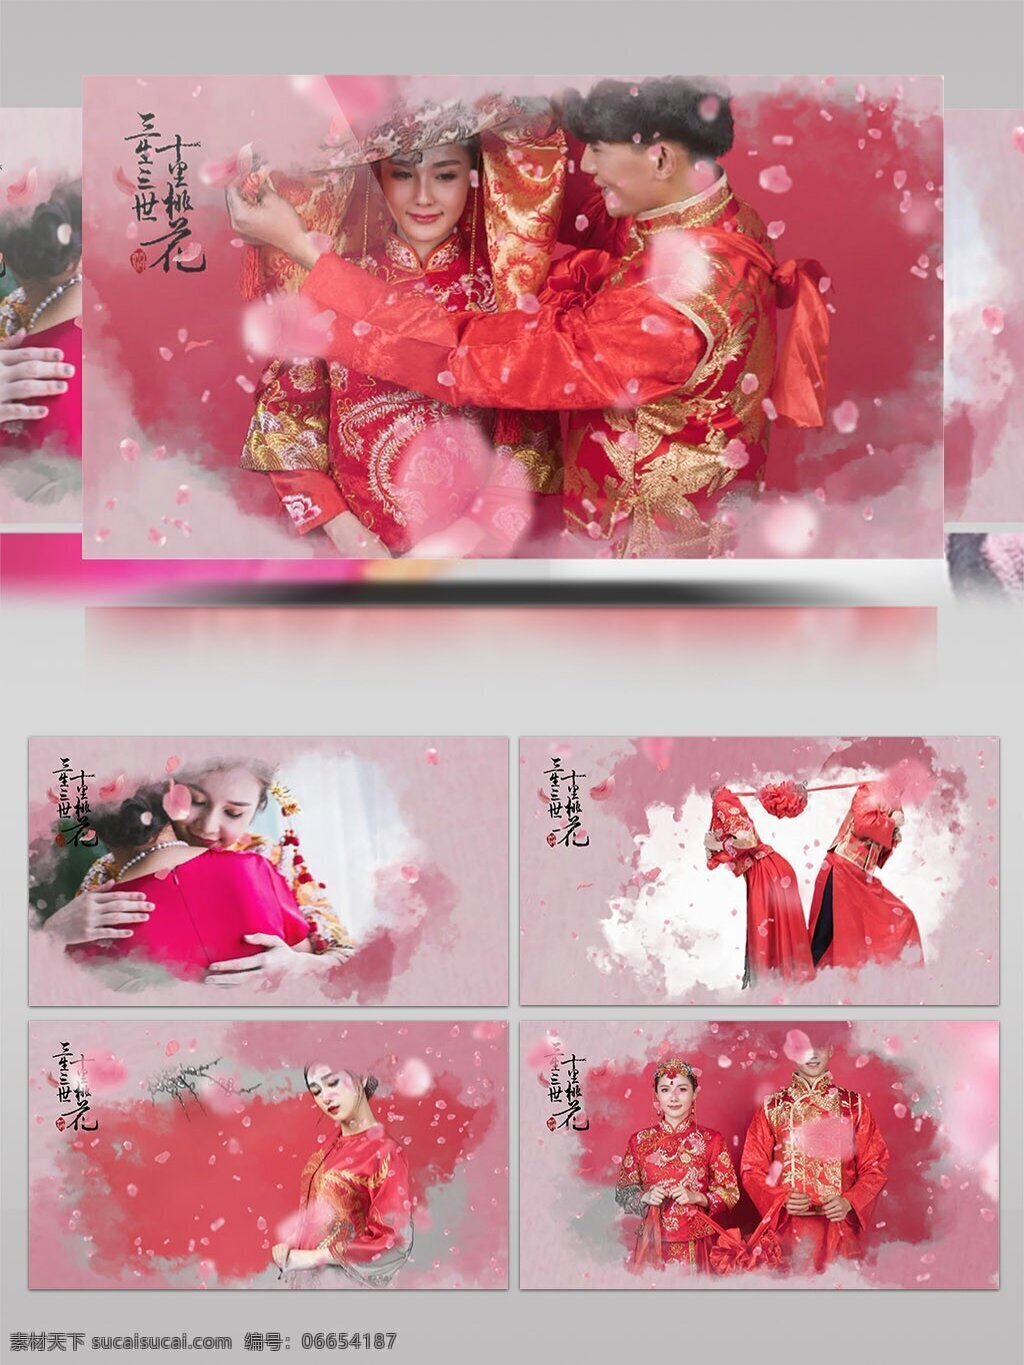 唯美 桃花 装饰 中式 婚礼 开场 展示 ae 模板 古典 浪漫 片头 典雅